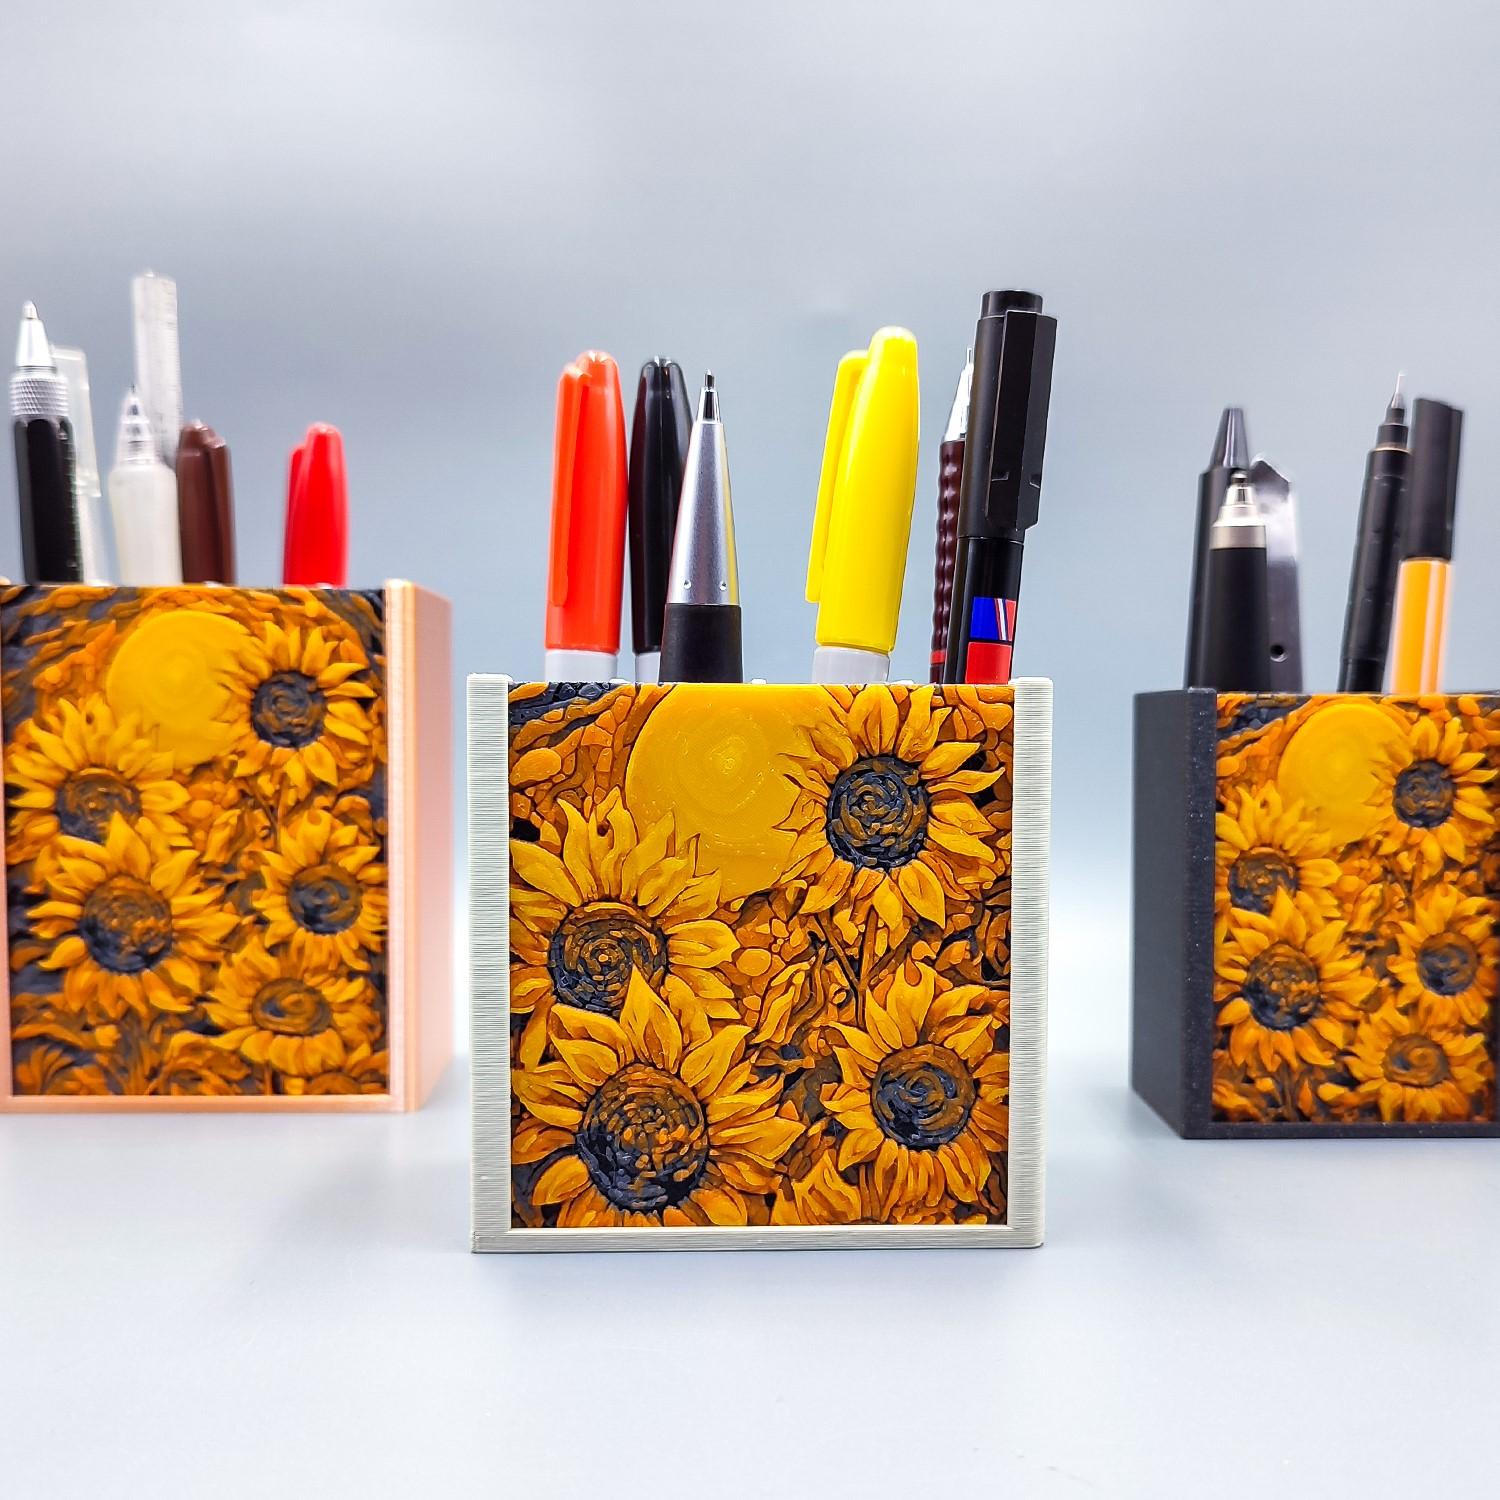 sunflower-pen-holder-1-1-01